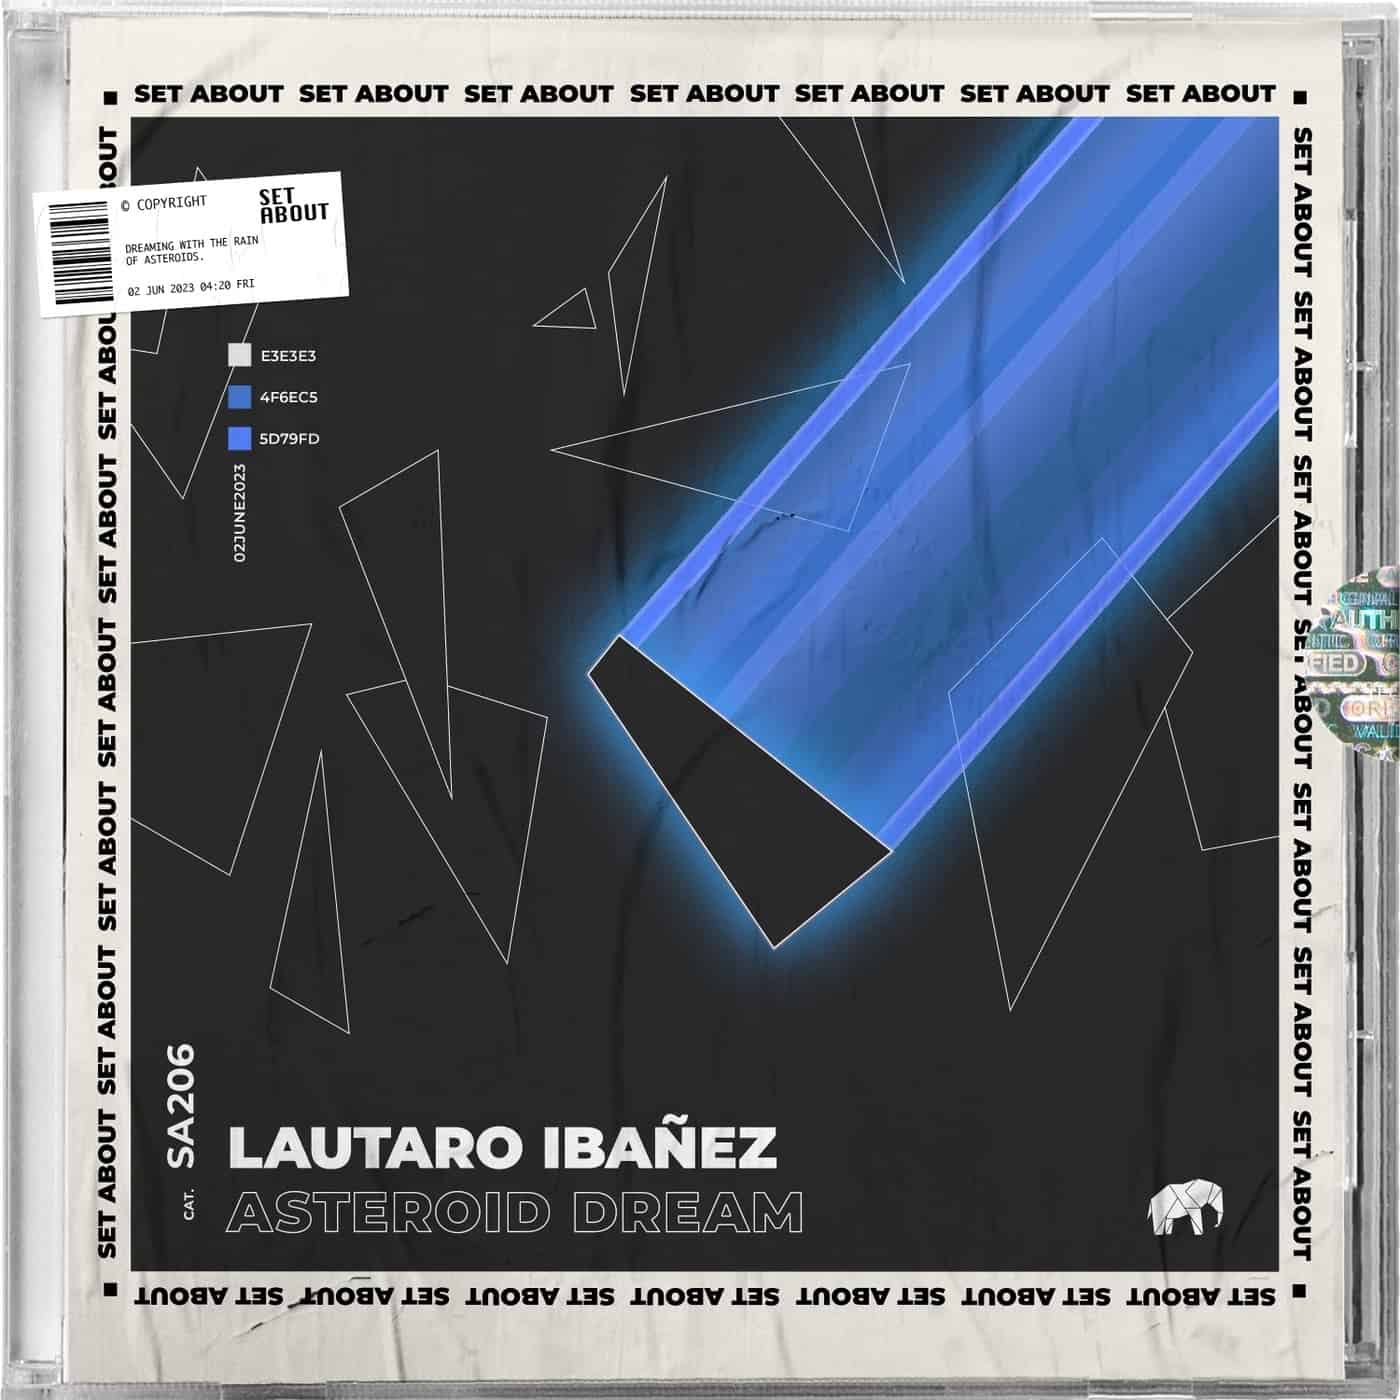 Download Lautaro Ibañez - Asteroid Dream on Electrobuzz